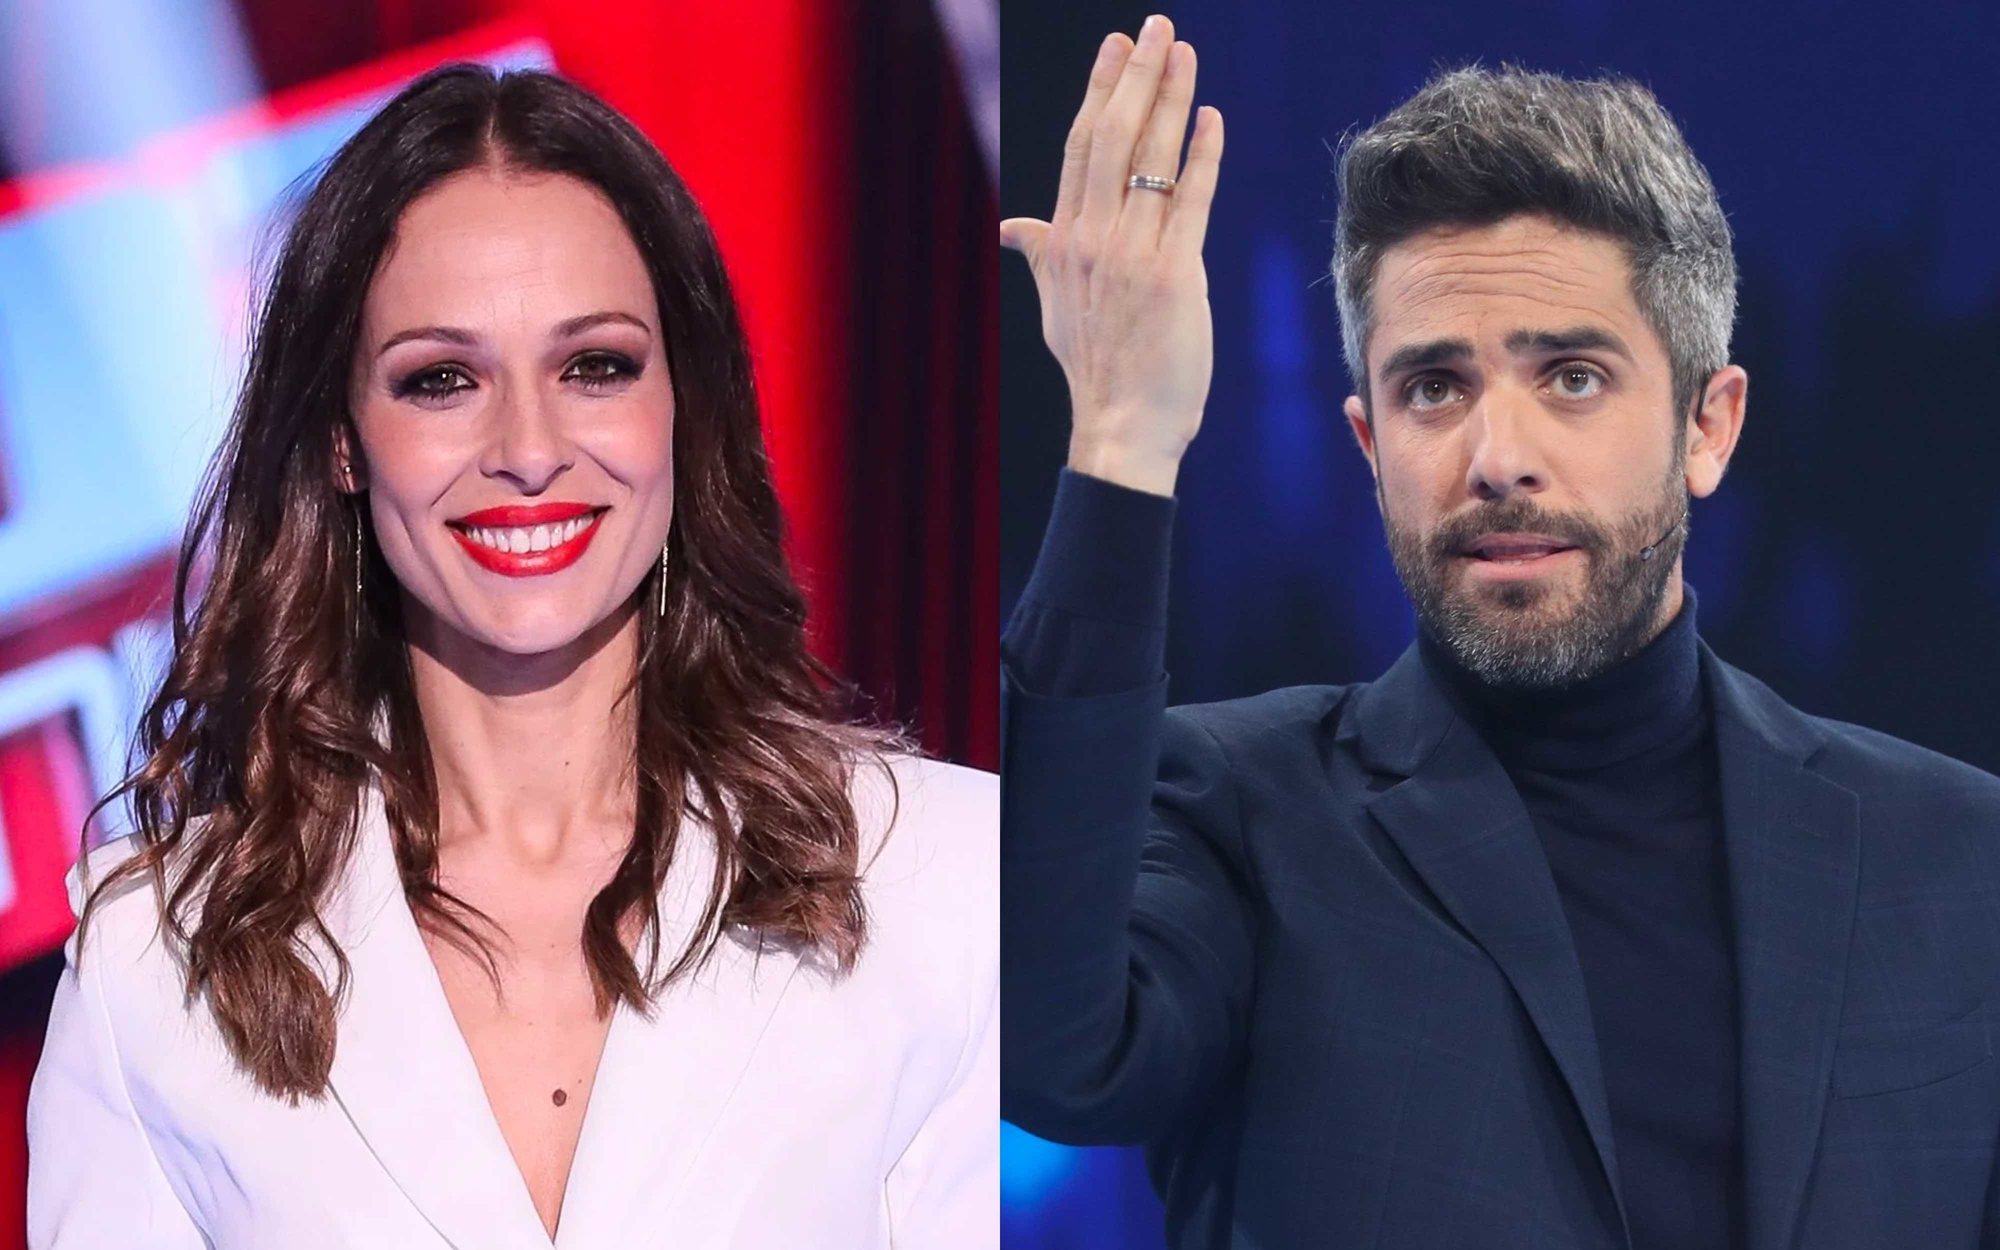 Roberto Leal y Eva González presentarán el especial de Nochevieja de Antena 3 